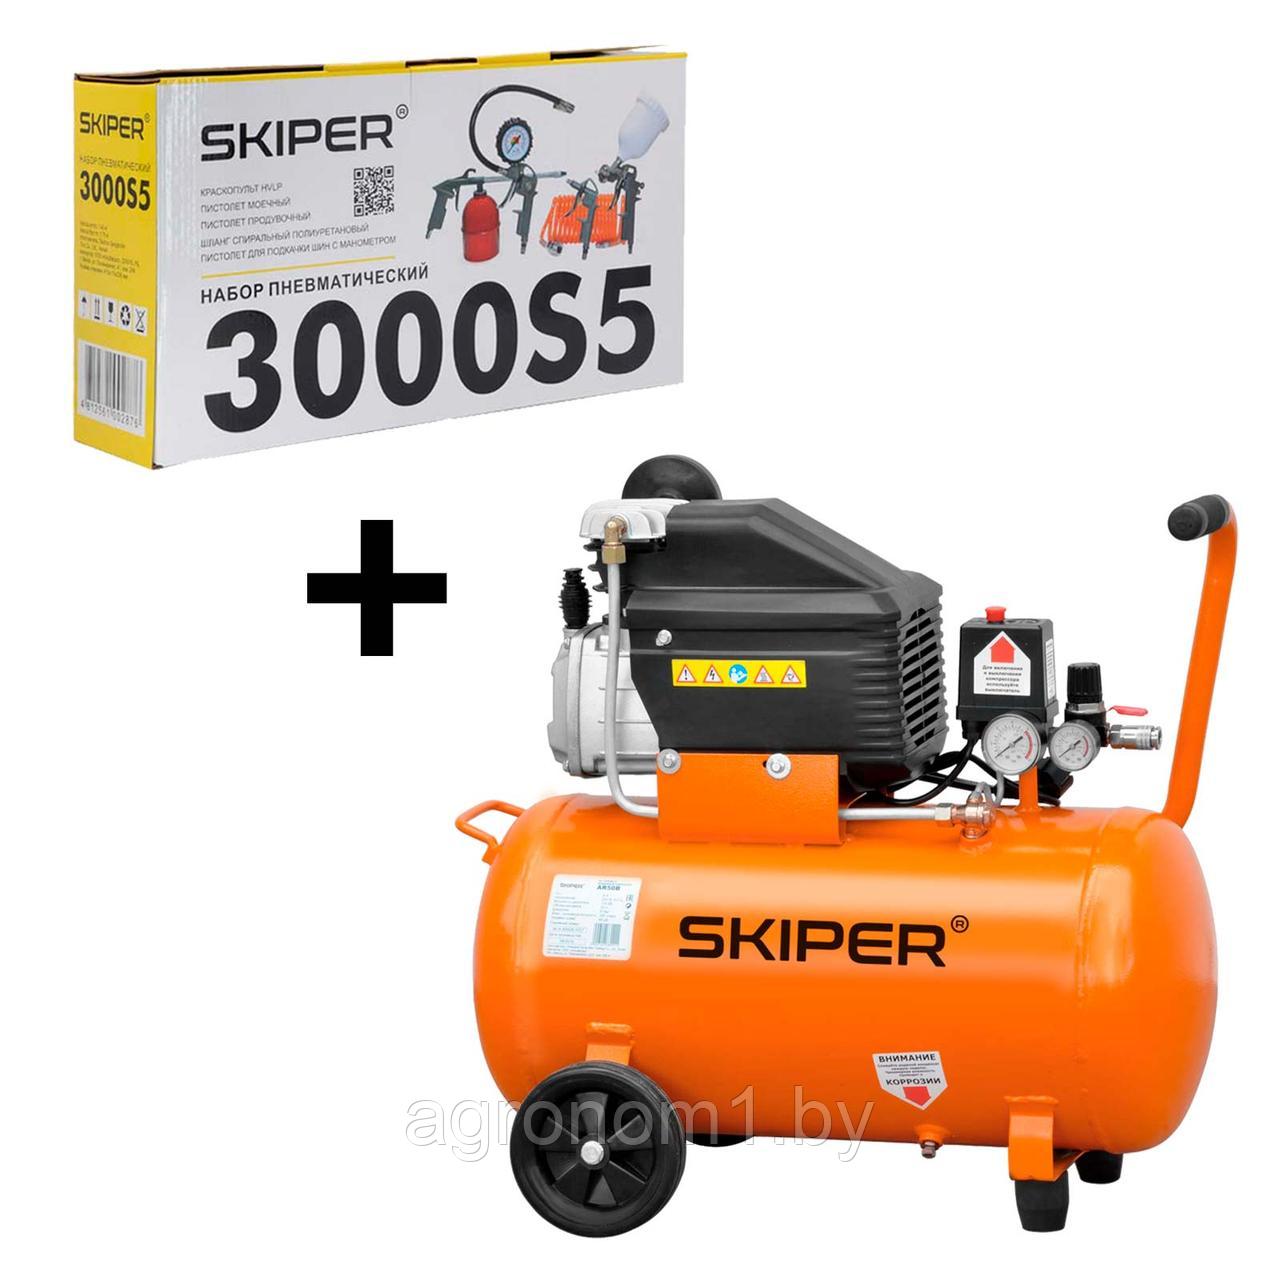 Воздушный компрессор SKIPER AR50B (50л, 230В, 1.80кВт) +Набор пневматический SKIPER 3000S5 (5в1)